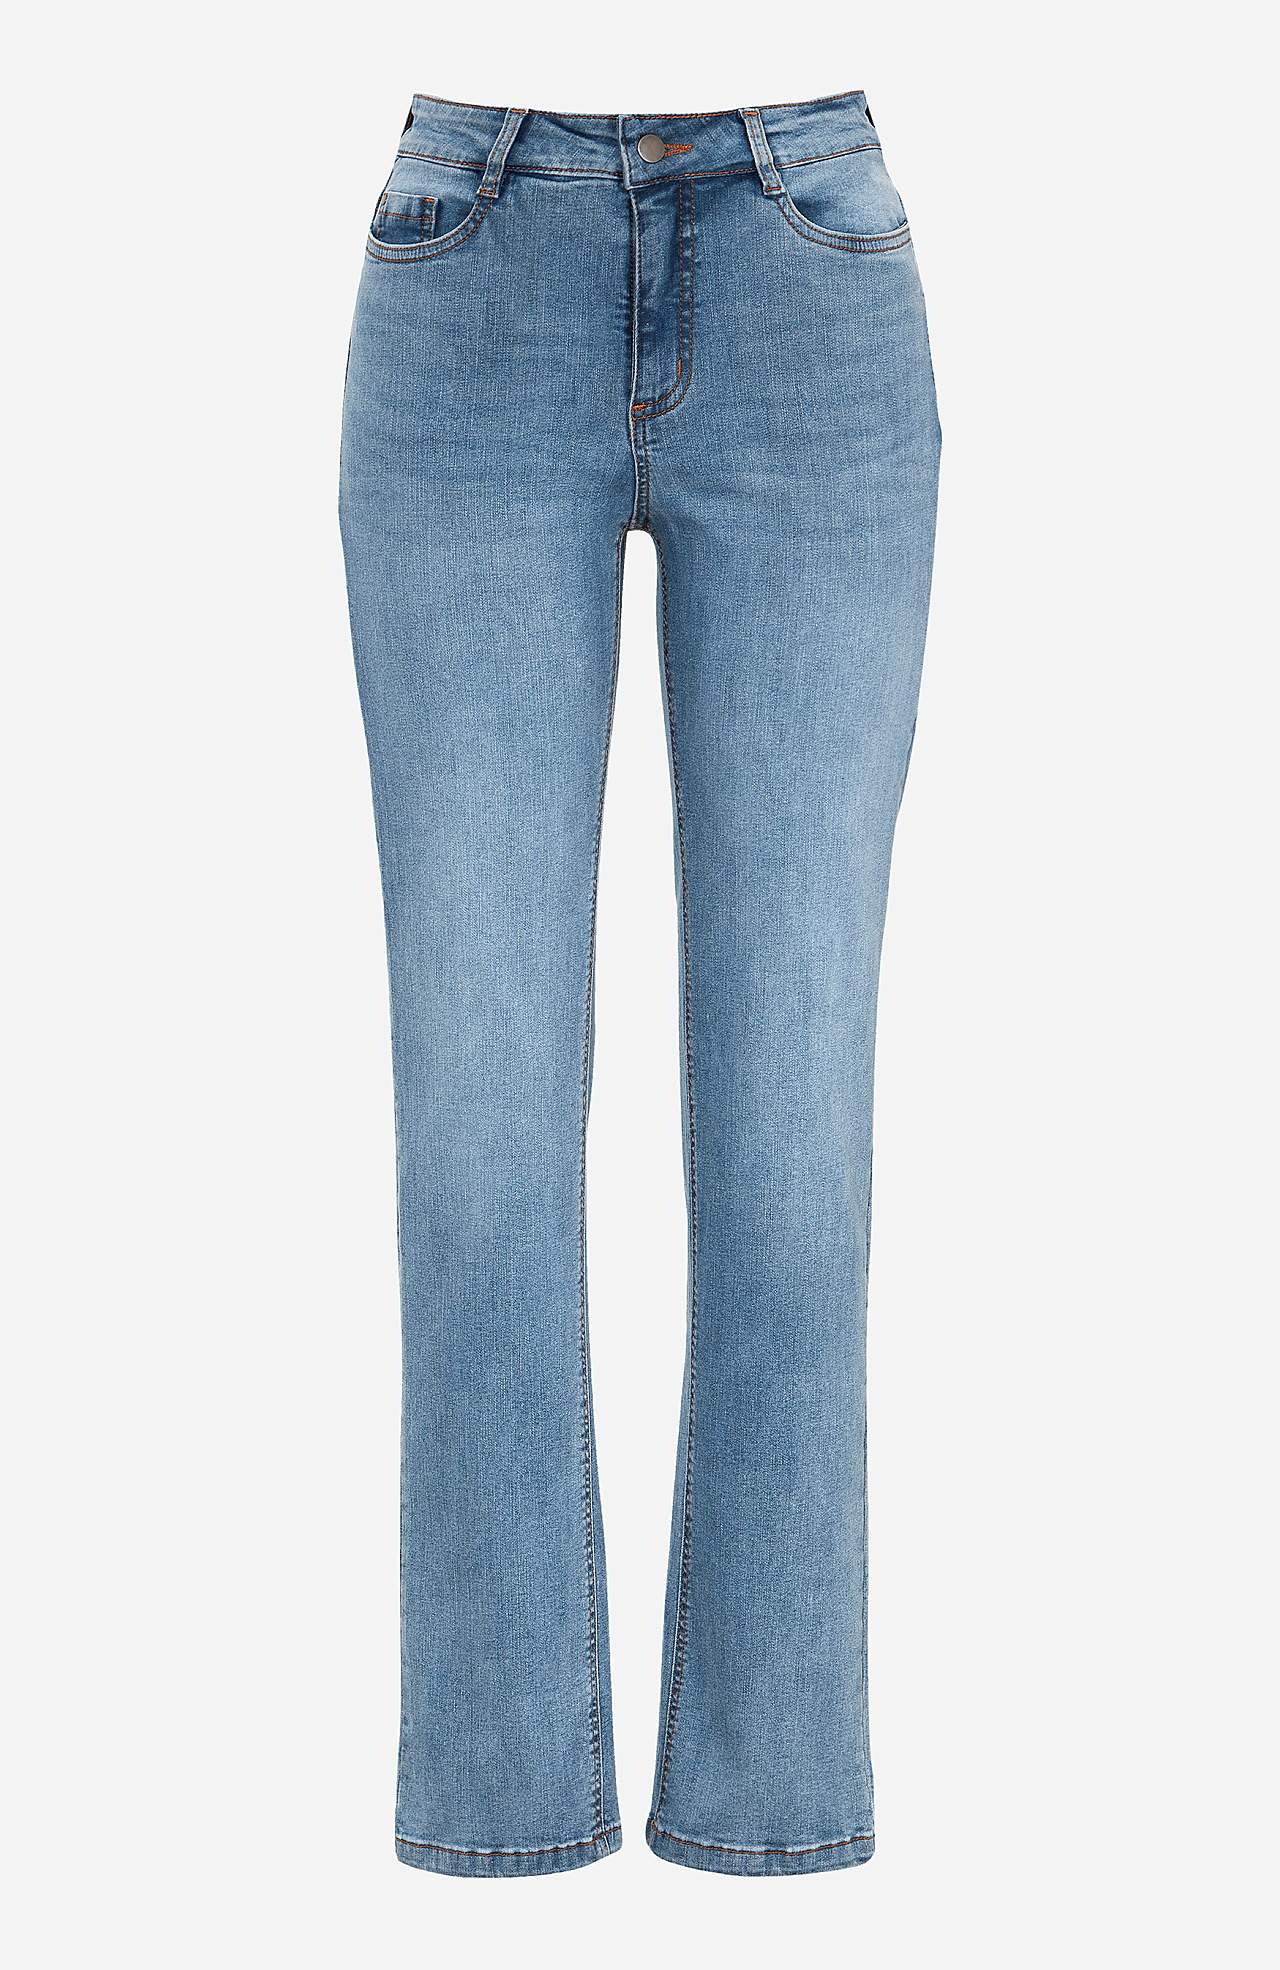 Pohodlné strečové džíny s rovným střihem Linnea